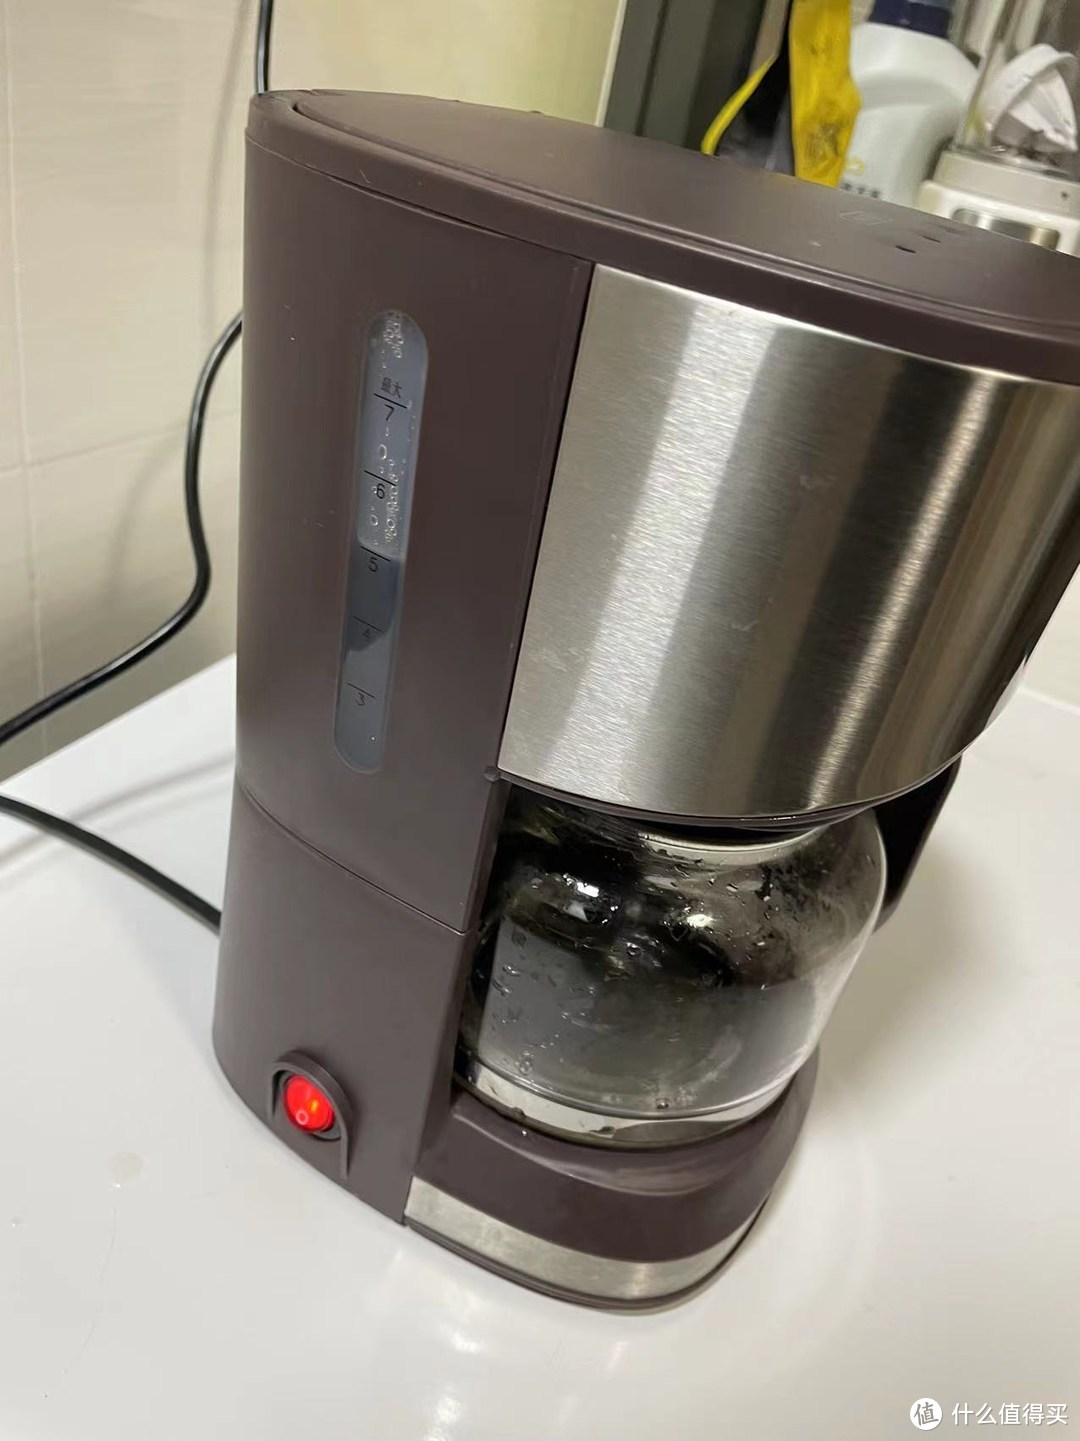 咖啡重度依赖者的神器 - 滴滤咖啡机